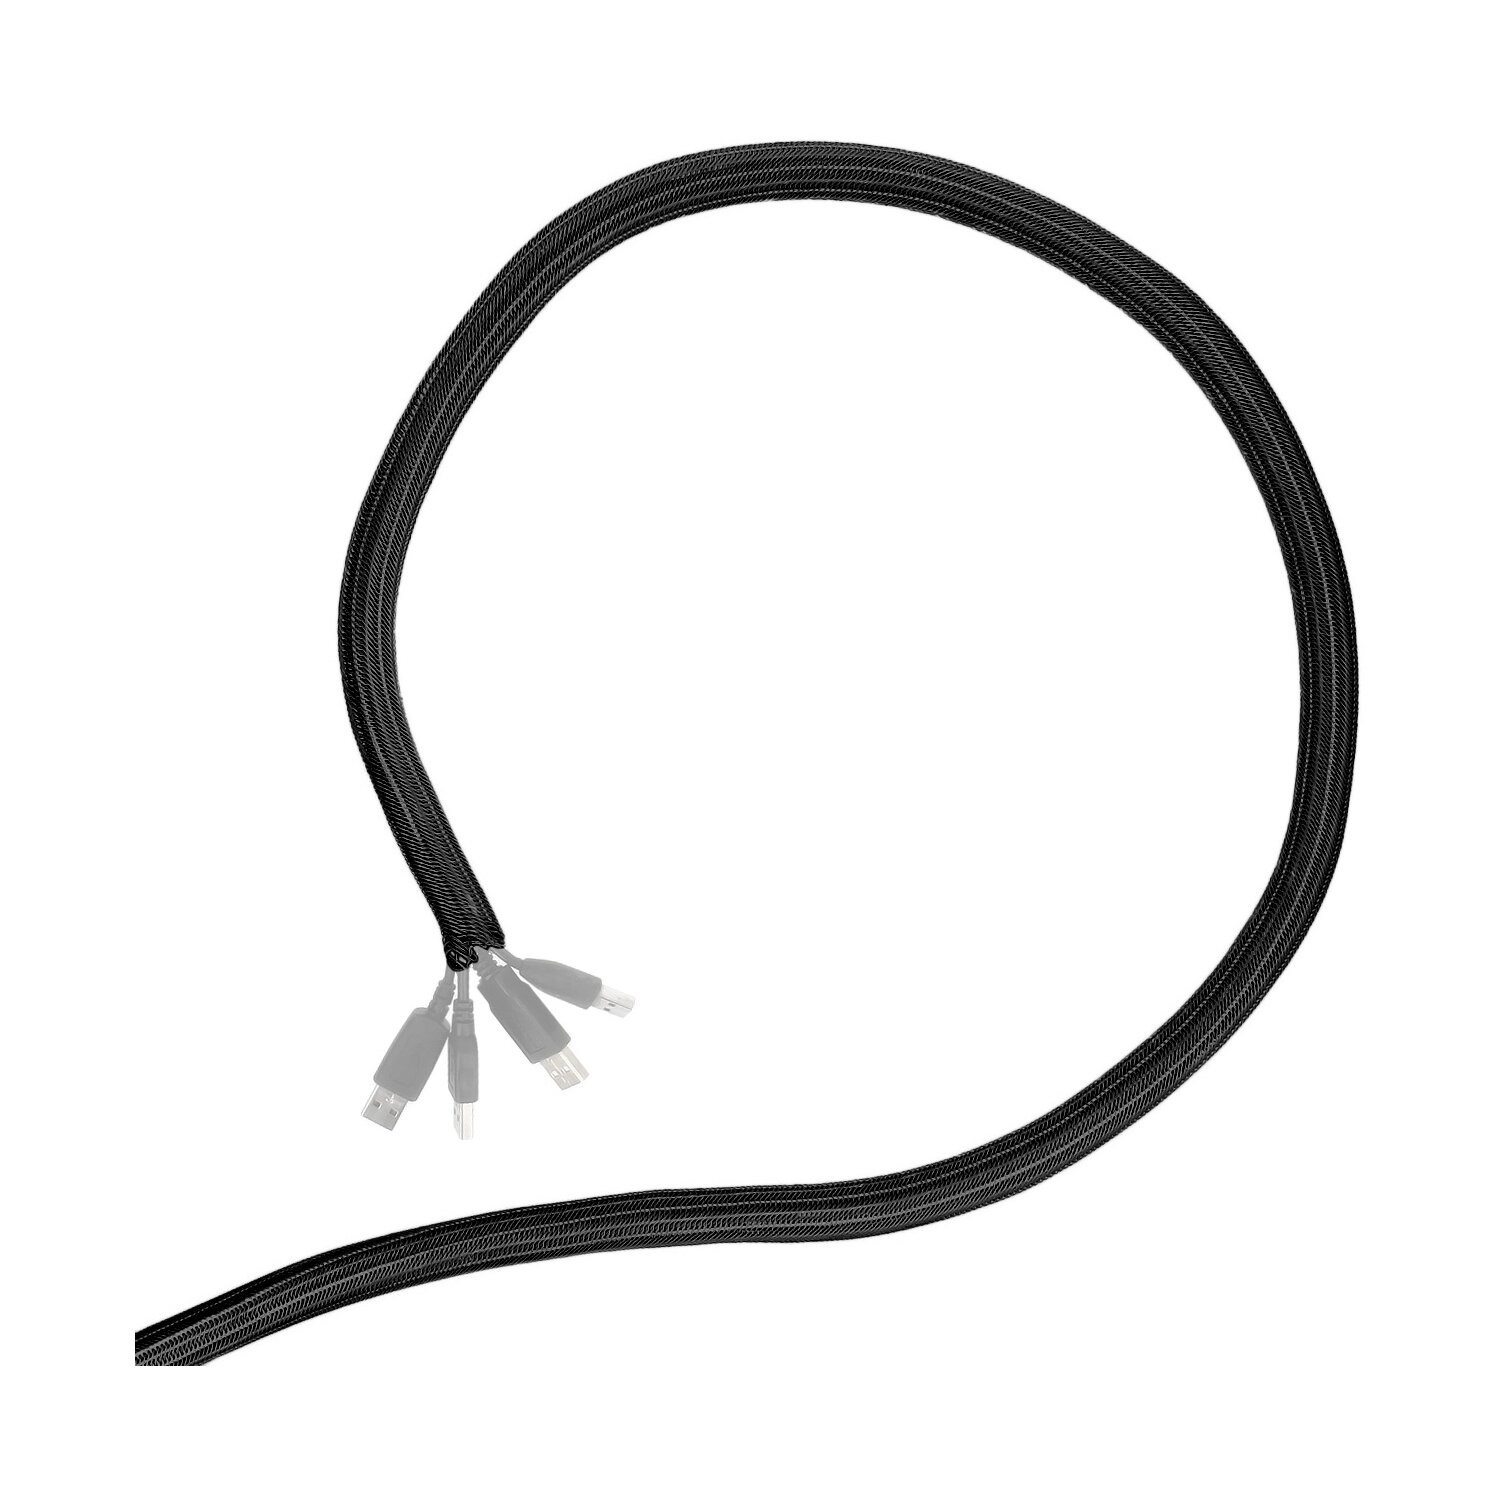 Minadax® 1 Meter, 50mm Ø Selbstschließender Profi Kabelschlauch Kabelkanal in schwarz für flexibles Kabelmanagement